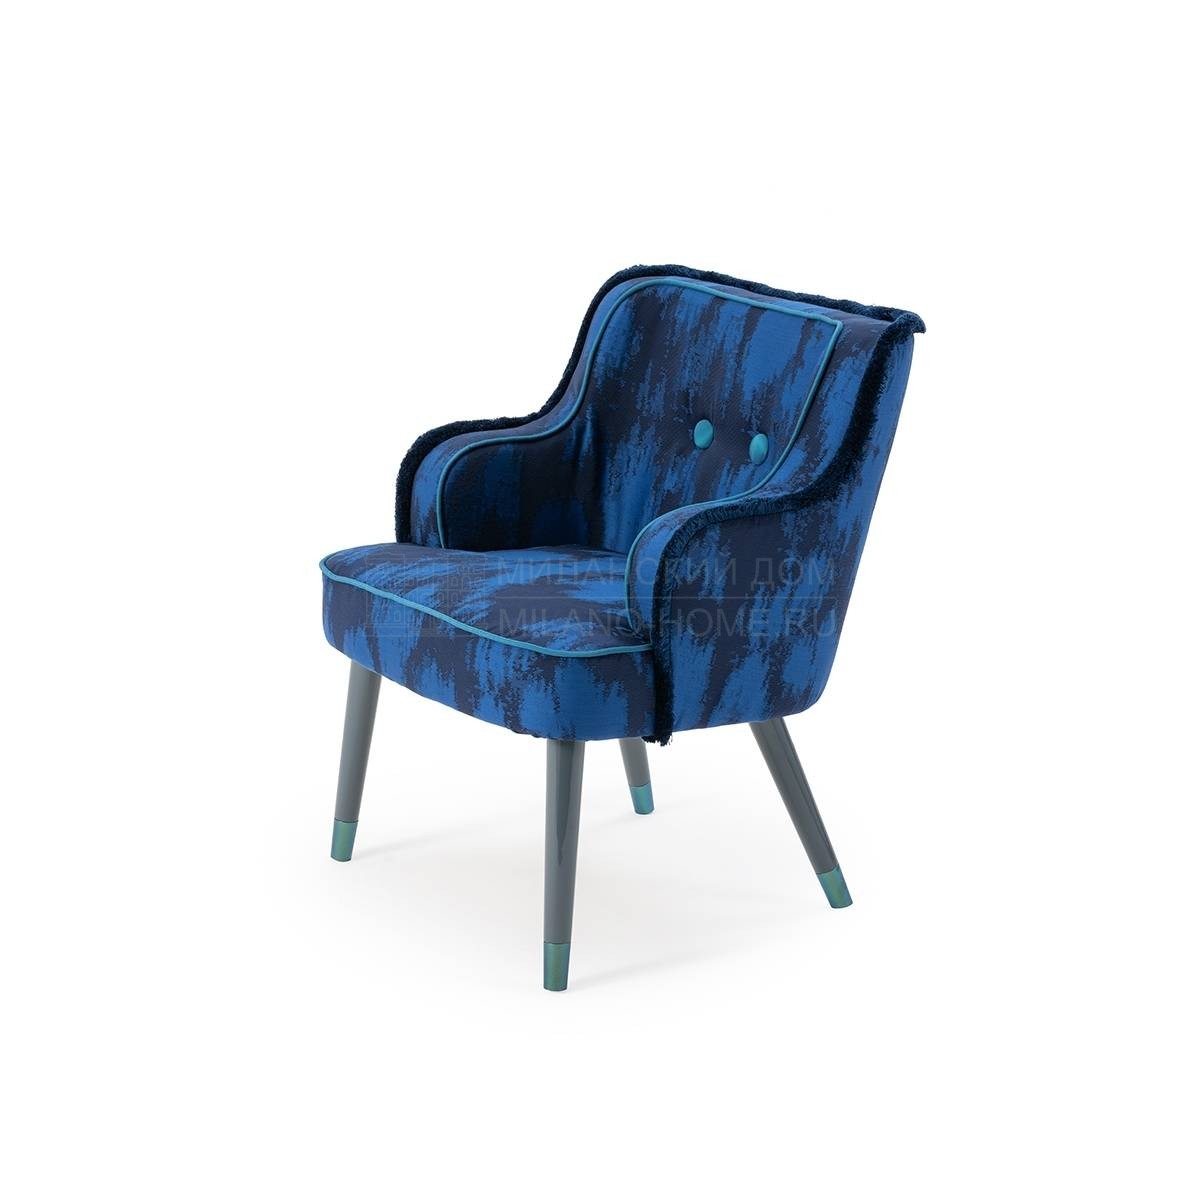 Полукресло Azul chair из Италии фабрики TURRI